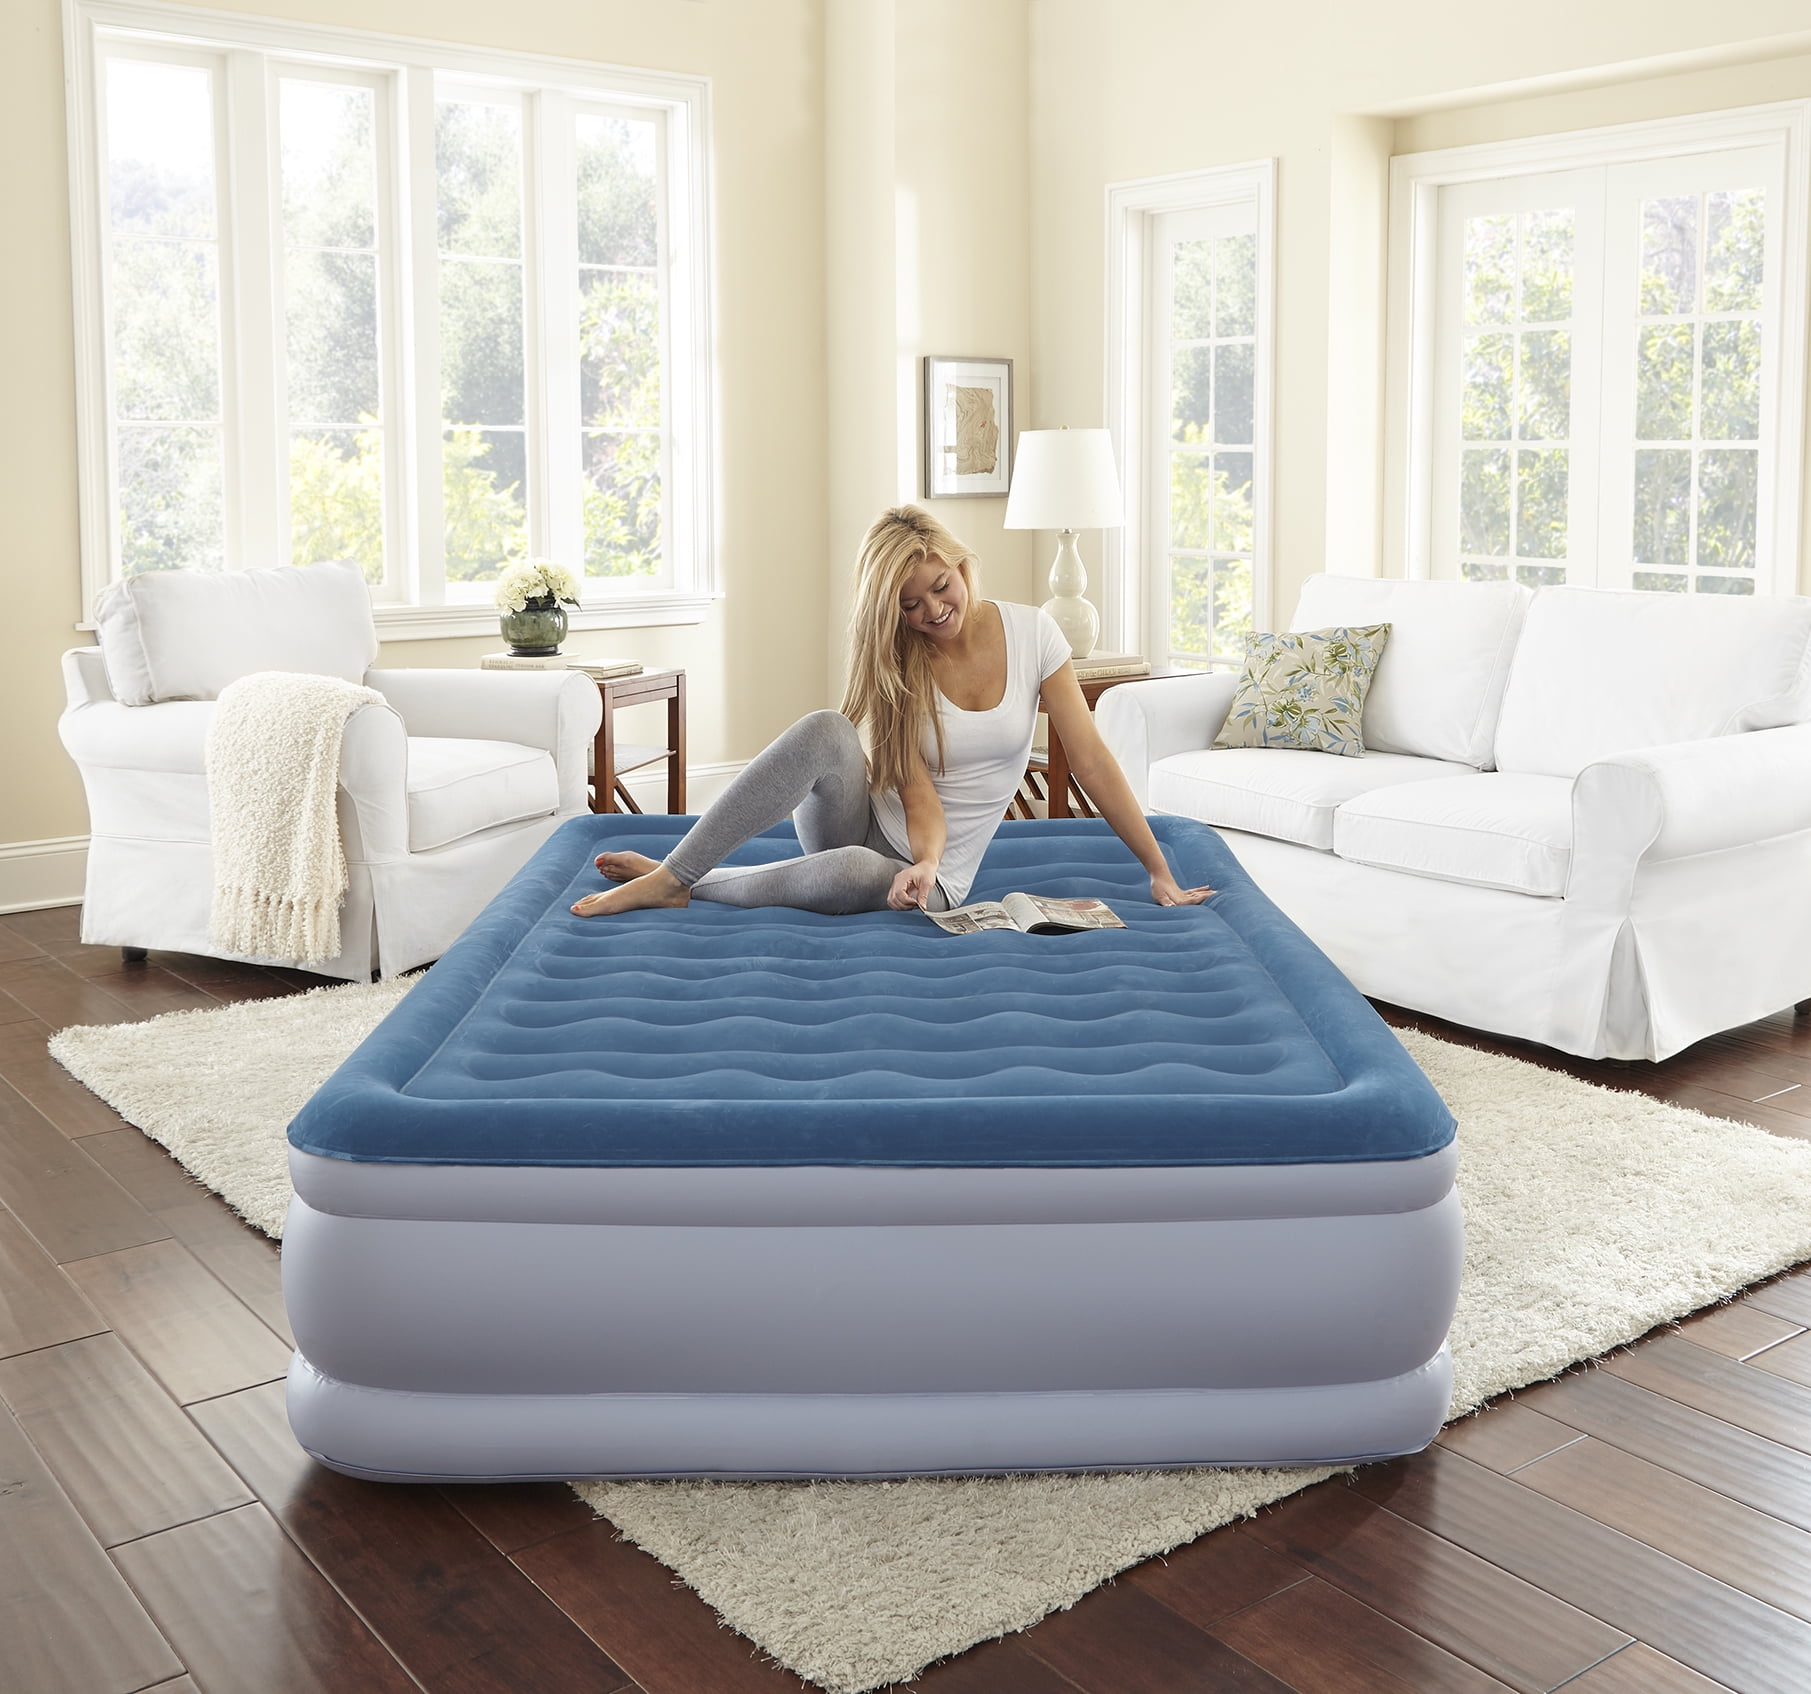 crib size air mattress